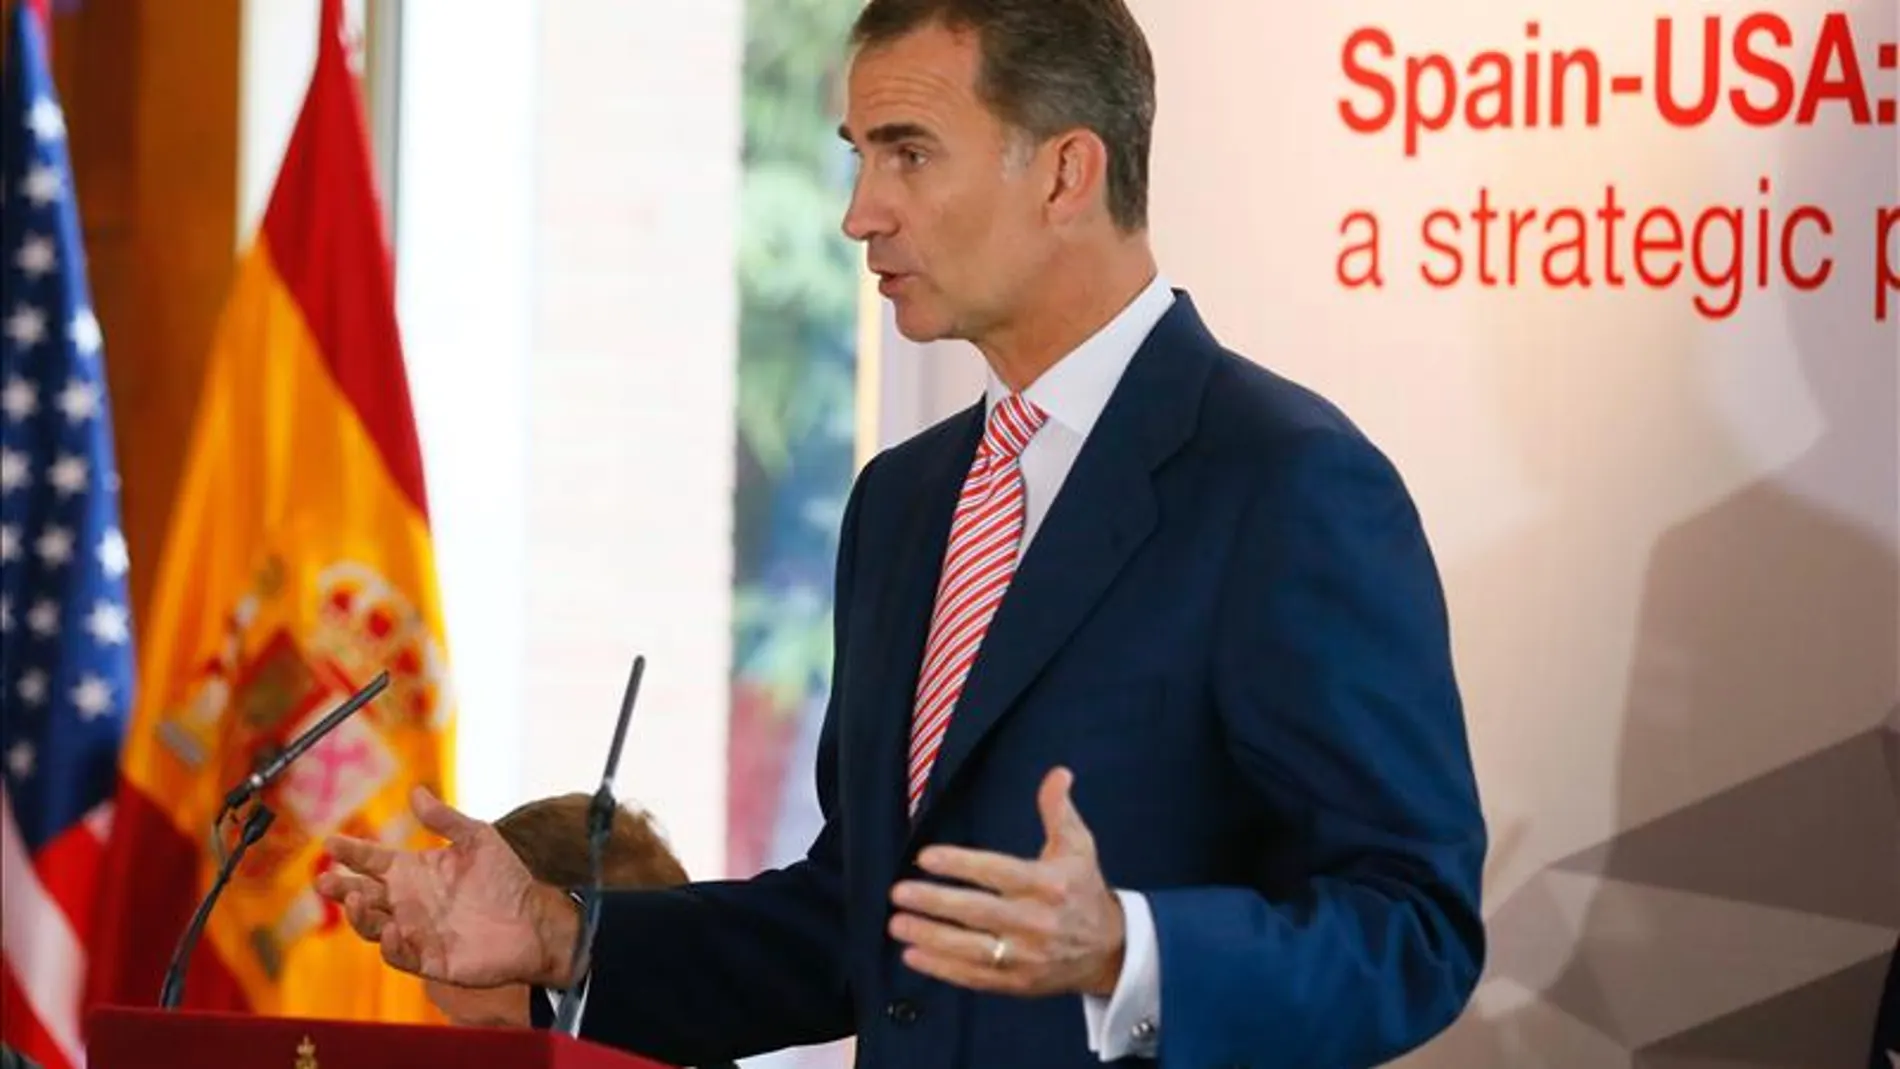 El rey anima a los empresarios de EE.UU a invertir en España, "que resurge con fuerza"